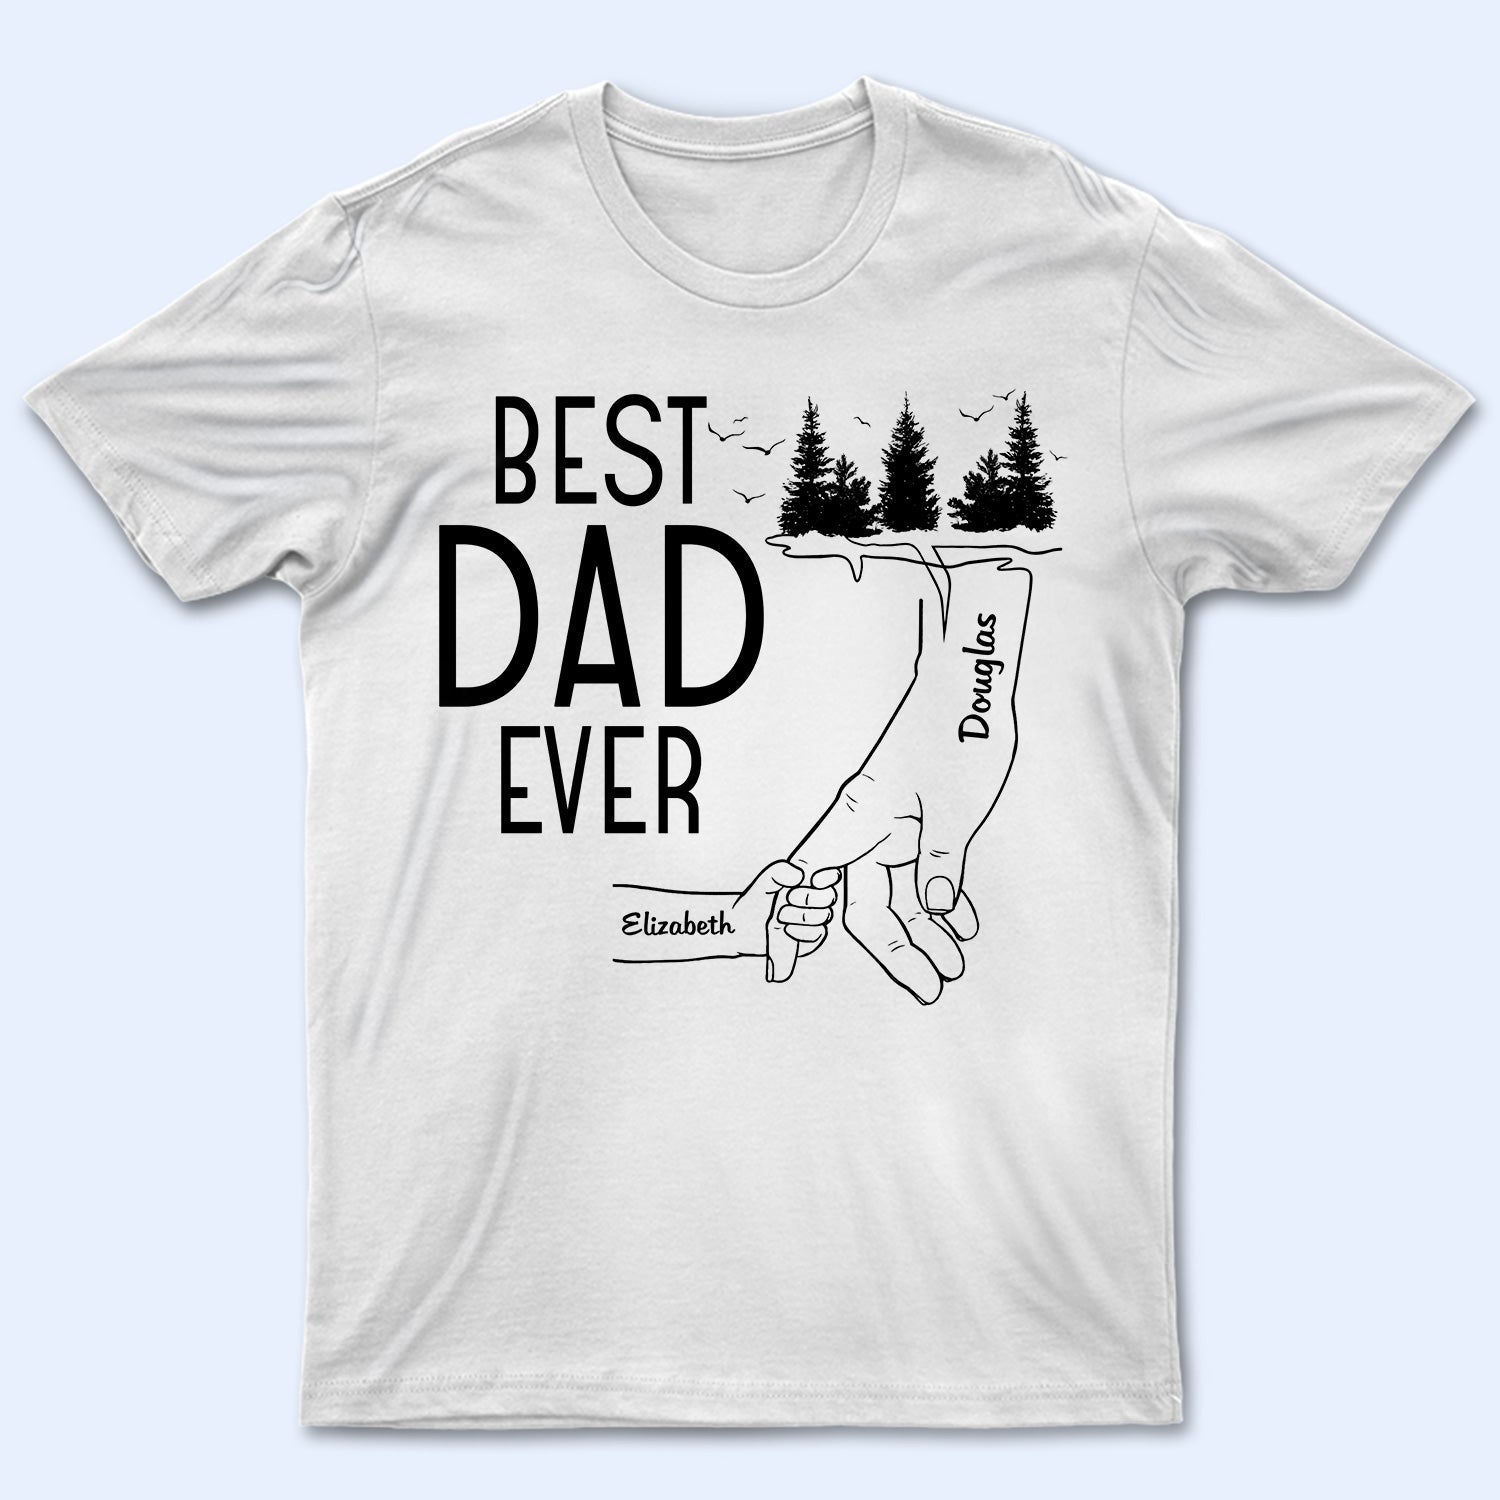 BEST PAPA EVER best gift t-shirt men's' Men's T-Shirt | Spreadshirt